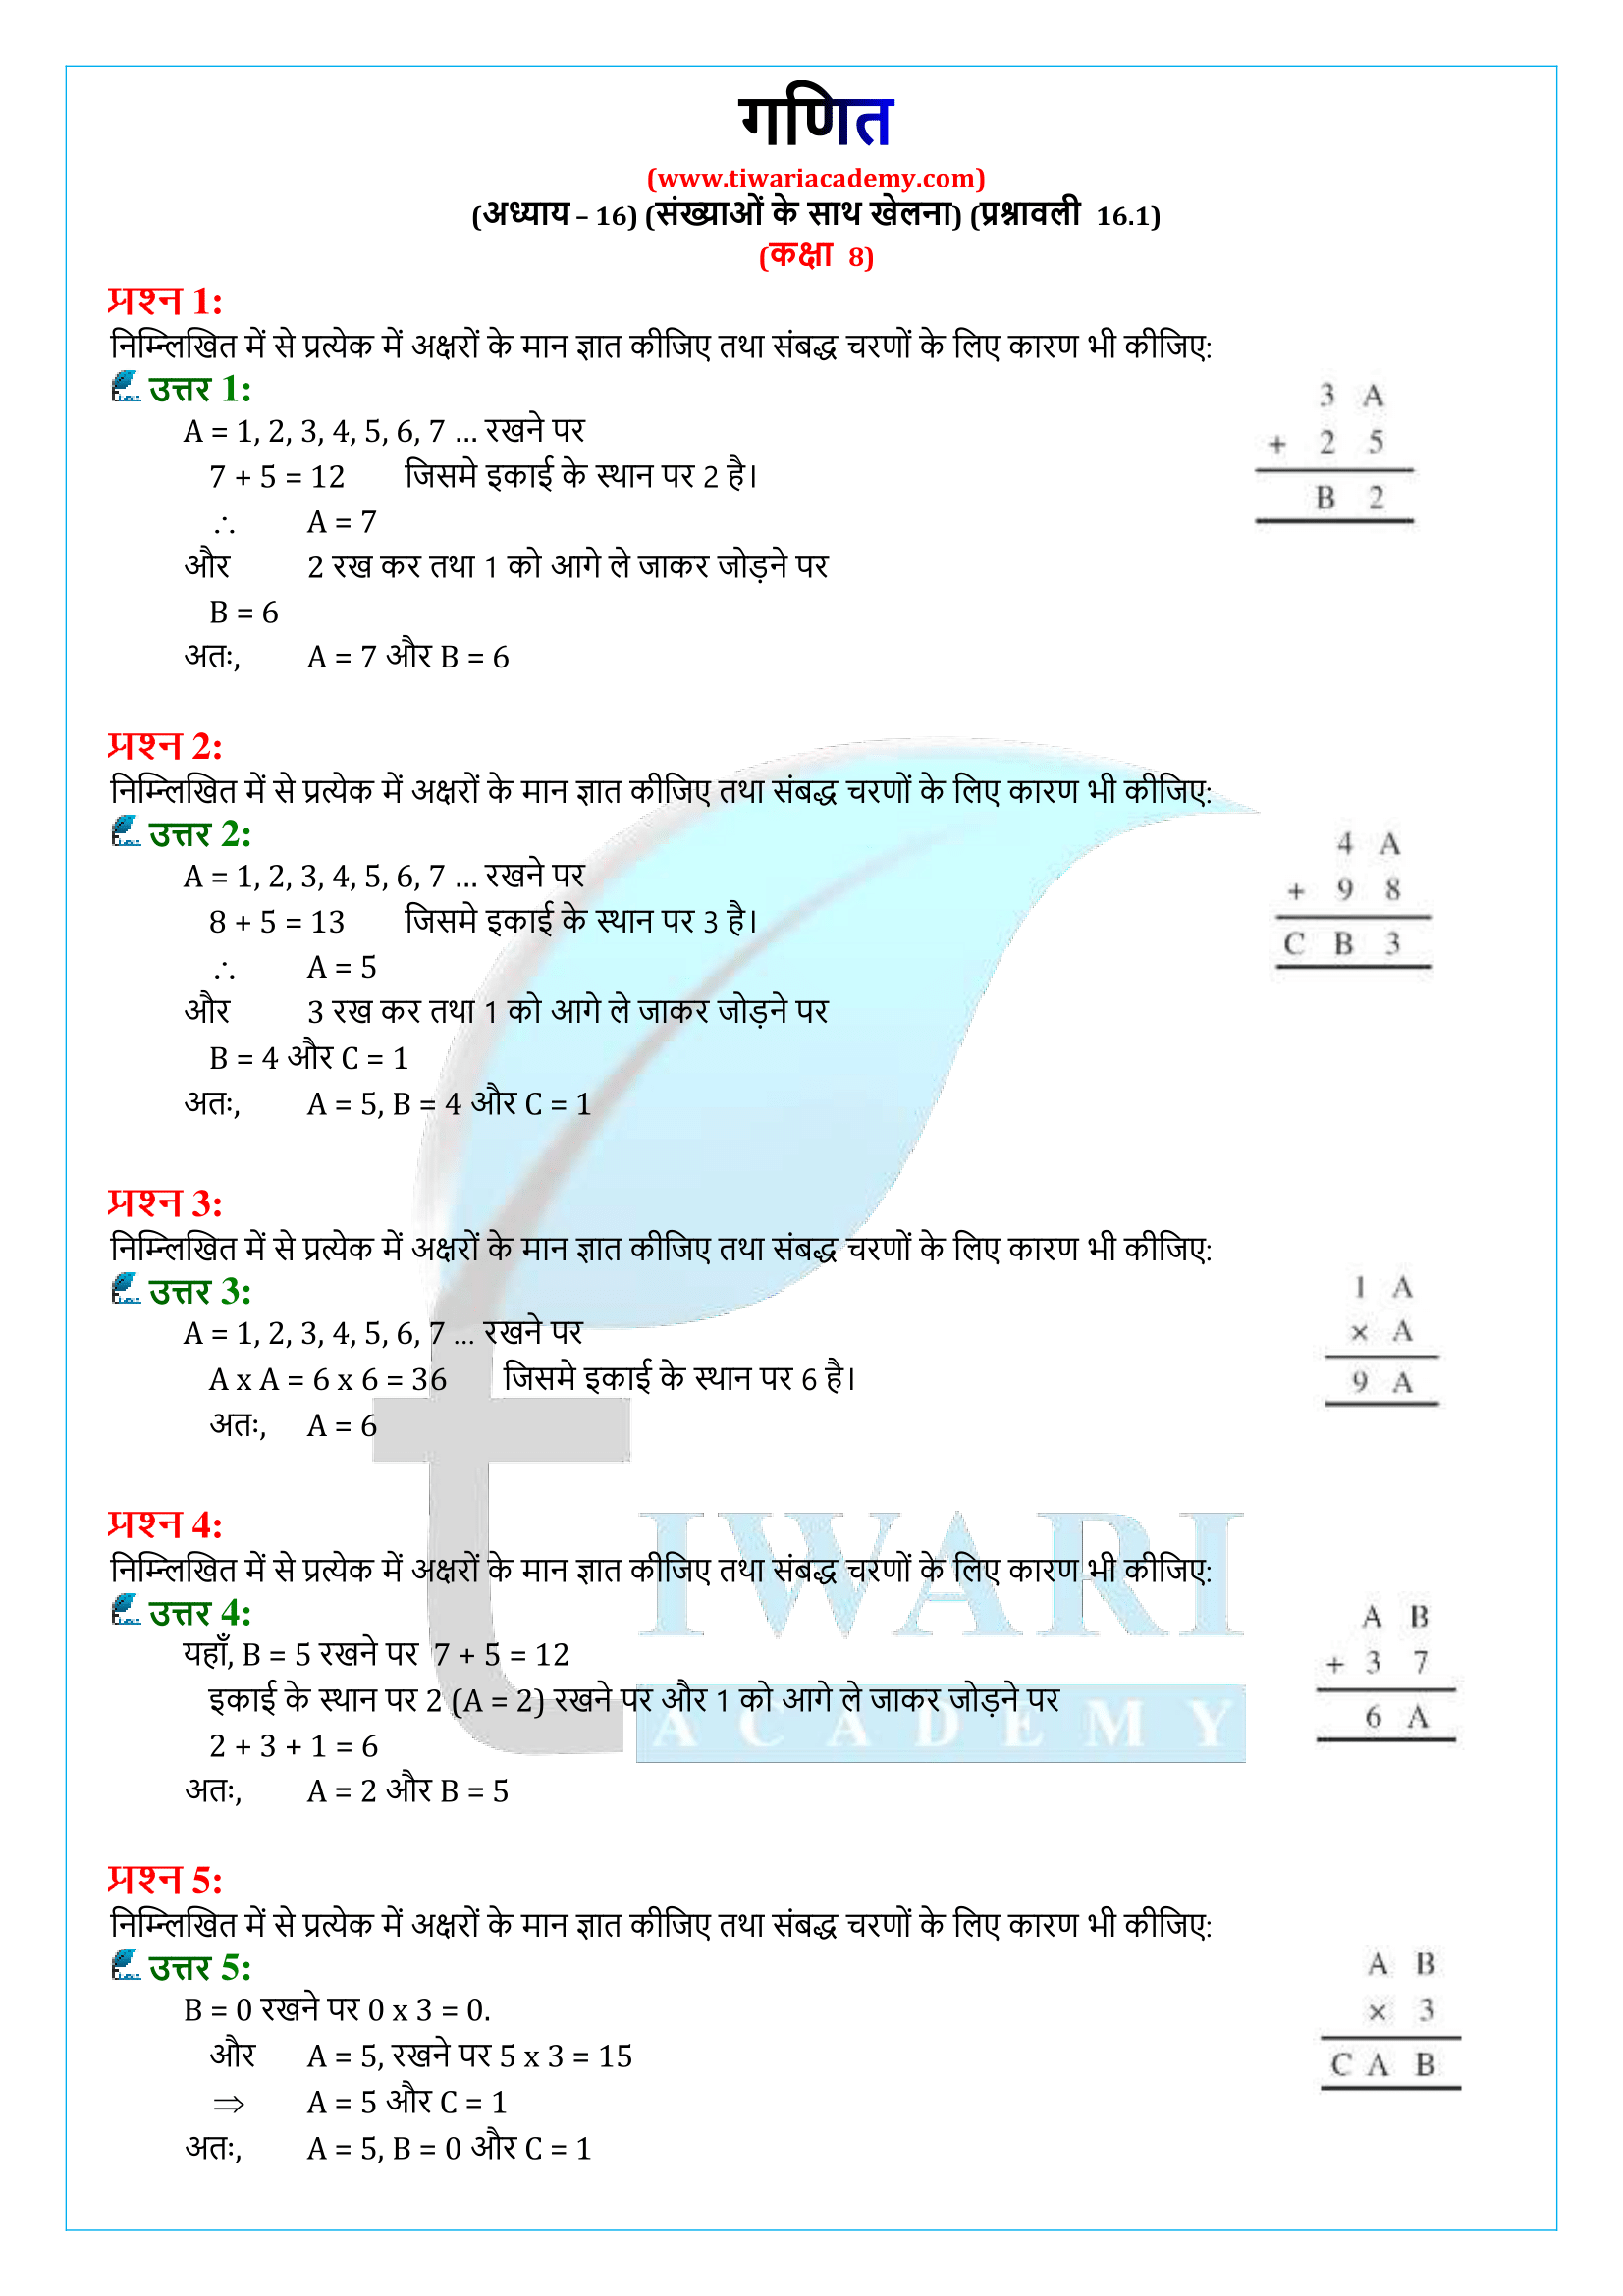 कक्षा 8 गणित प्रश्नावली 16.1 के हल